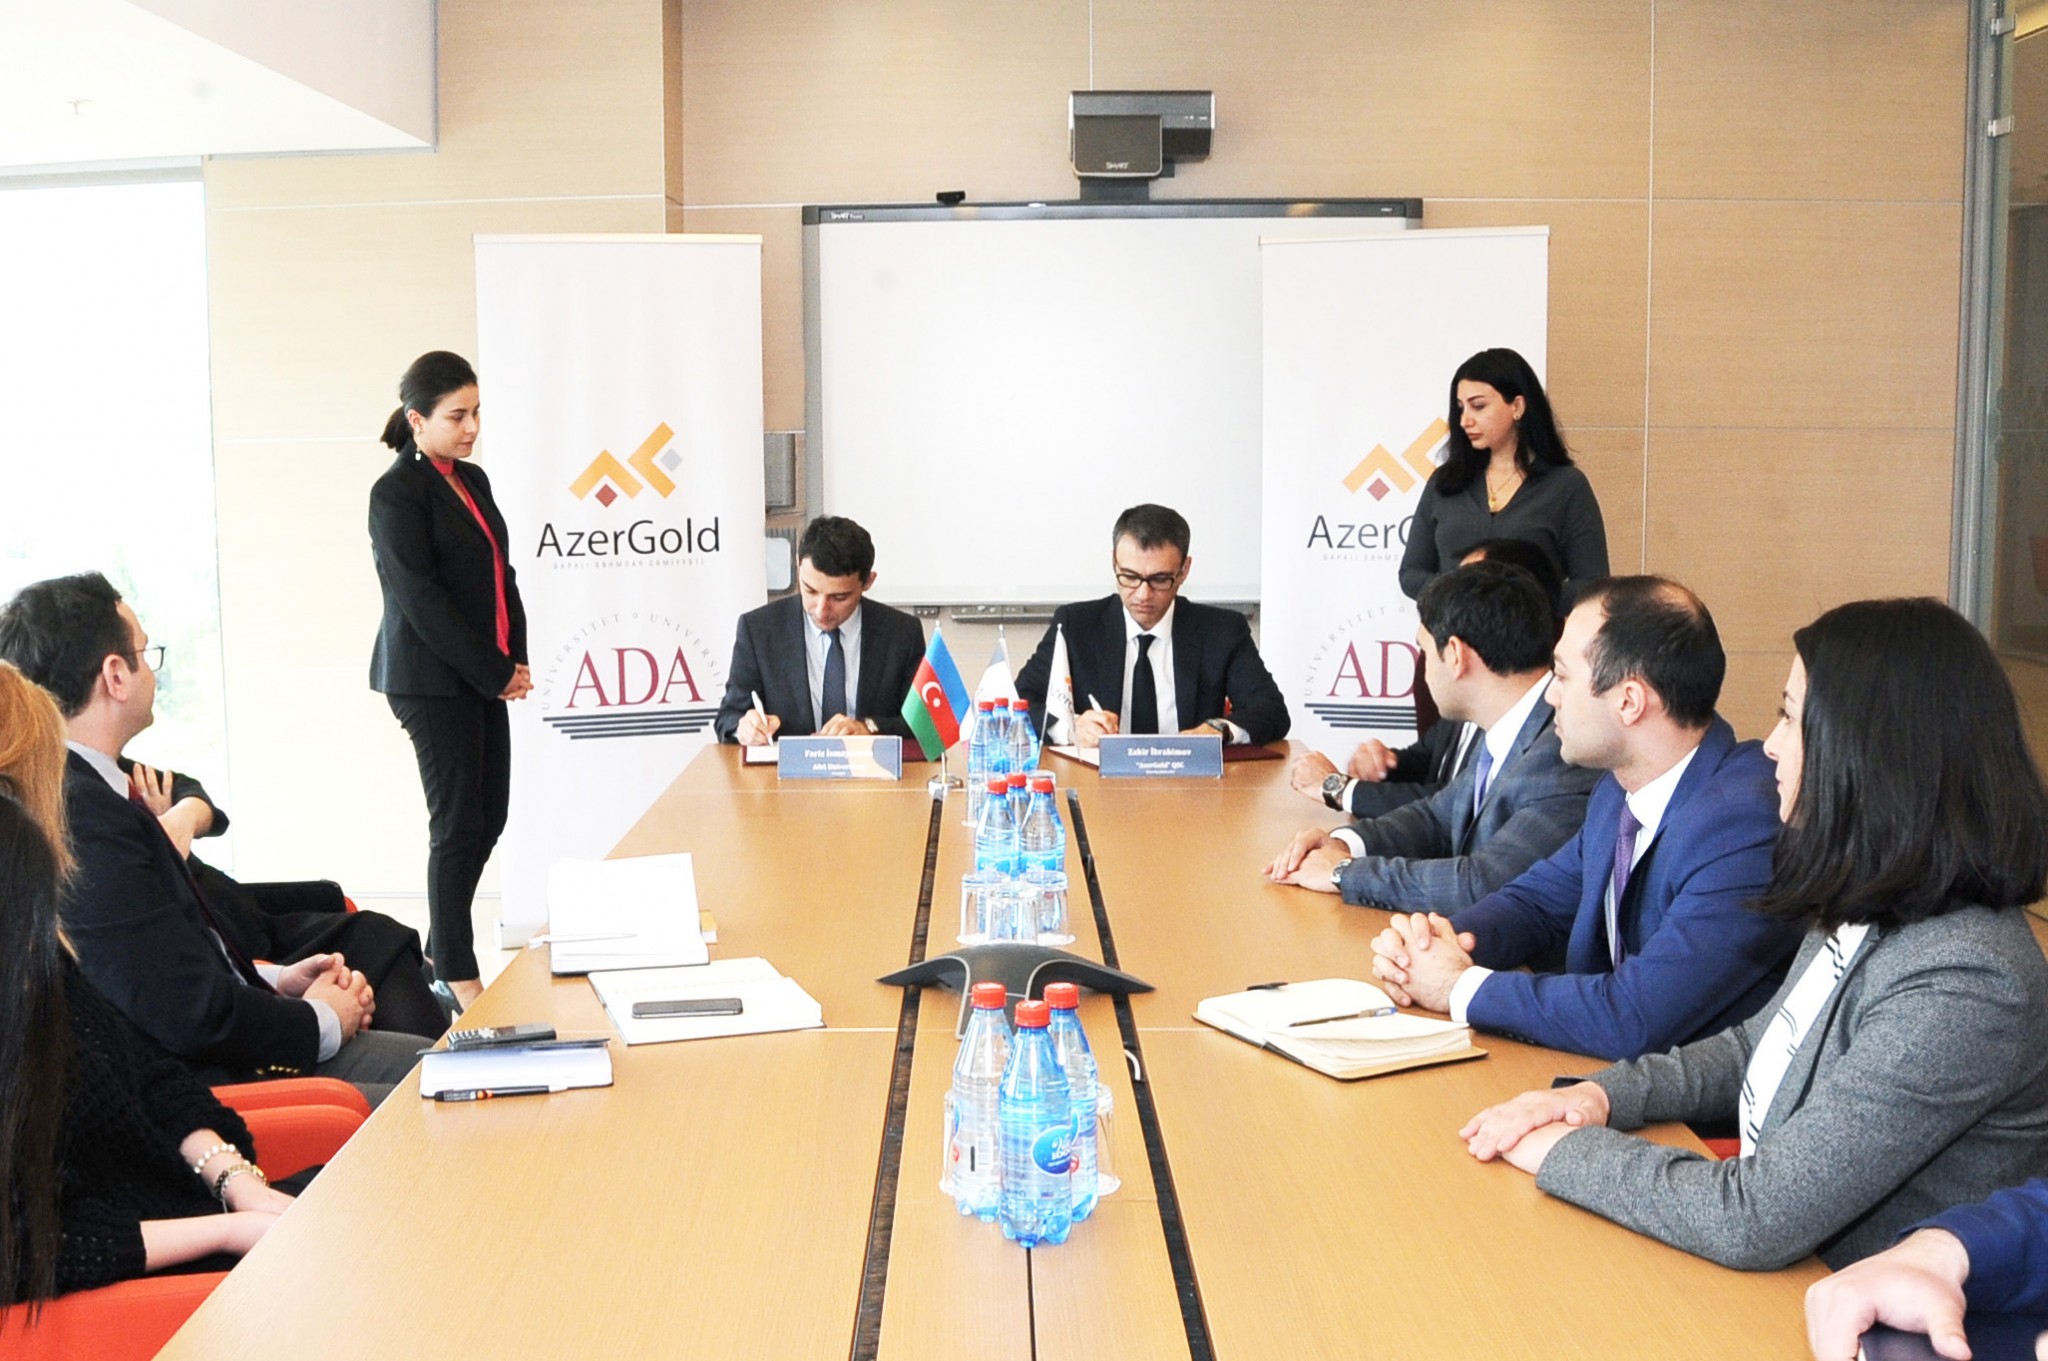 بورسیه تحصیلی آذربایجان در دانشگاه ADA ، بدون نیاز به مدرک زبان